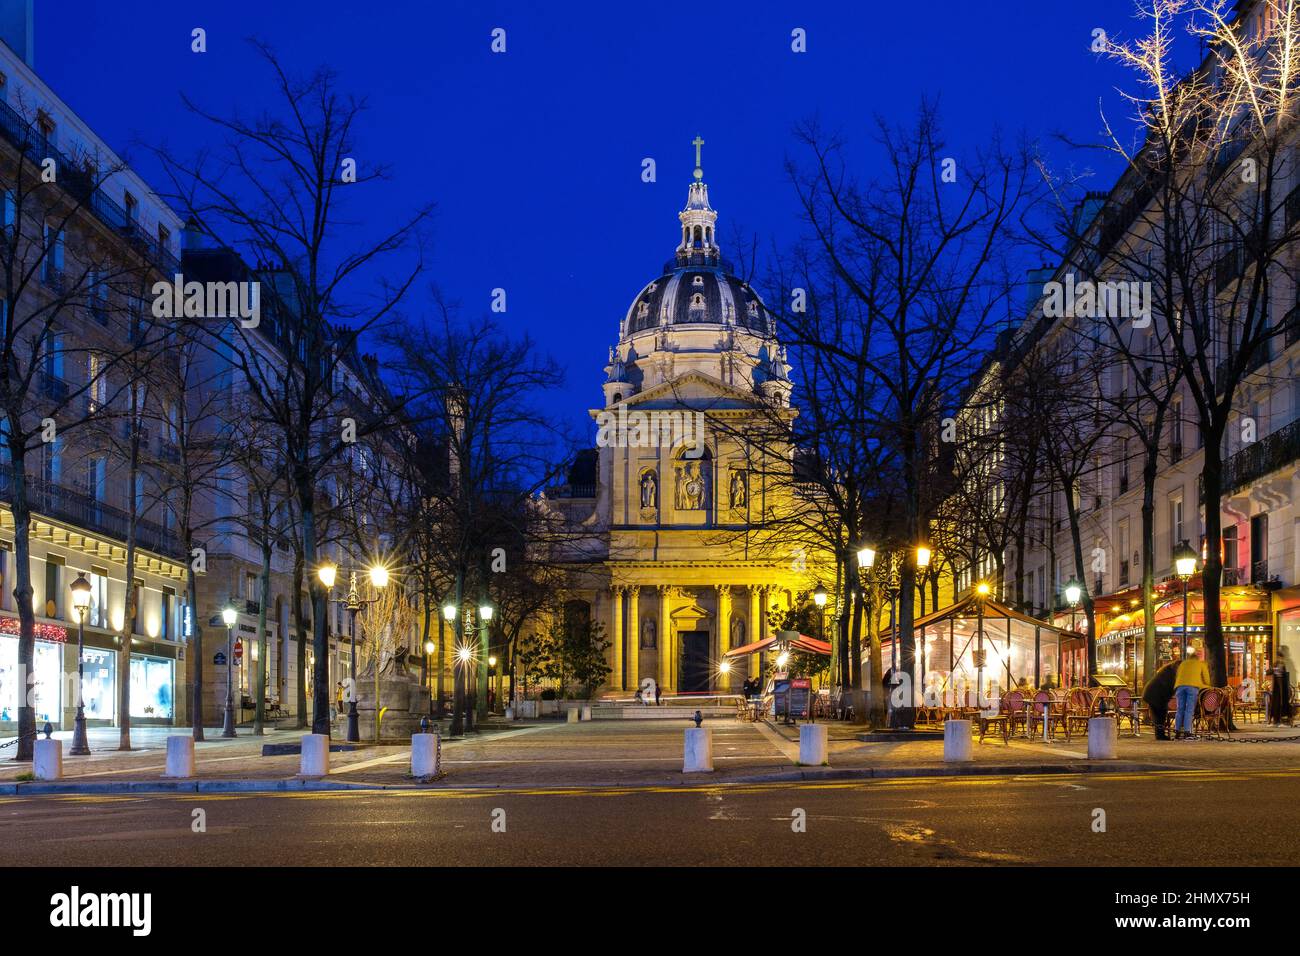 Parigi, Francia - 11 febbraio 2022 : veduta della splendida Cappella della Sorbona illuminata vicino alla famosa università di Parigi Foto Stock